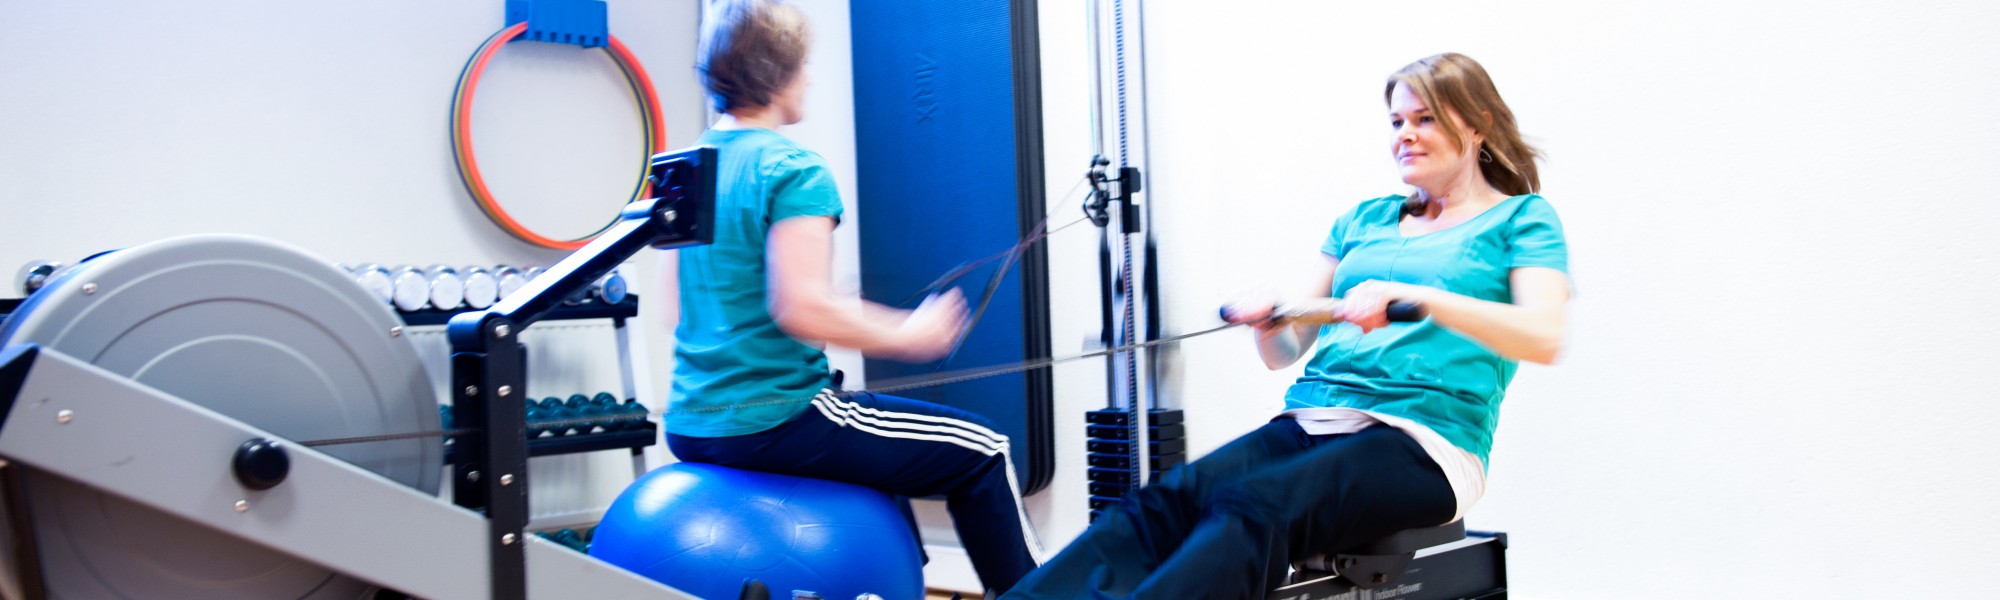 Fysiotherapie Driebergen Fysio-fitness